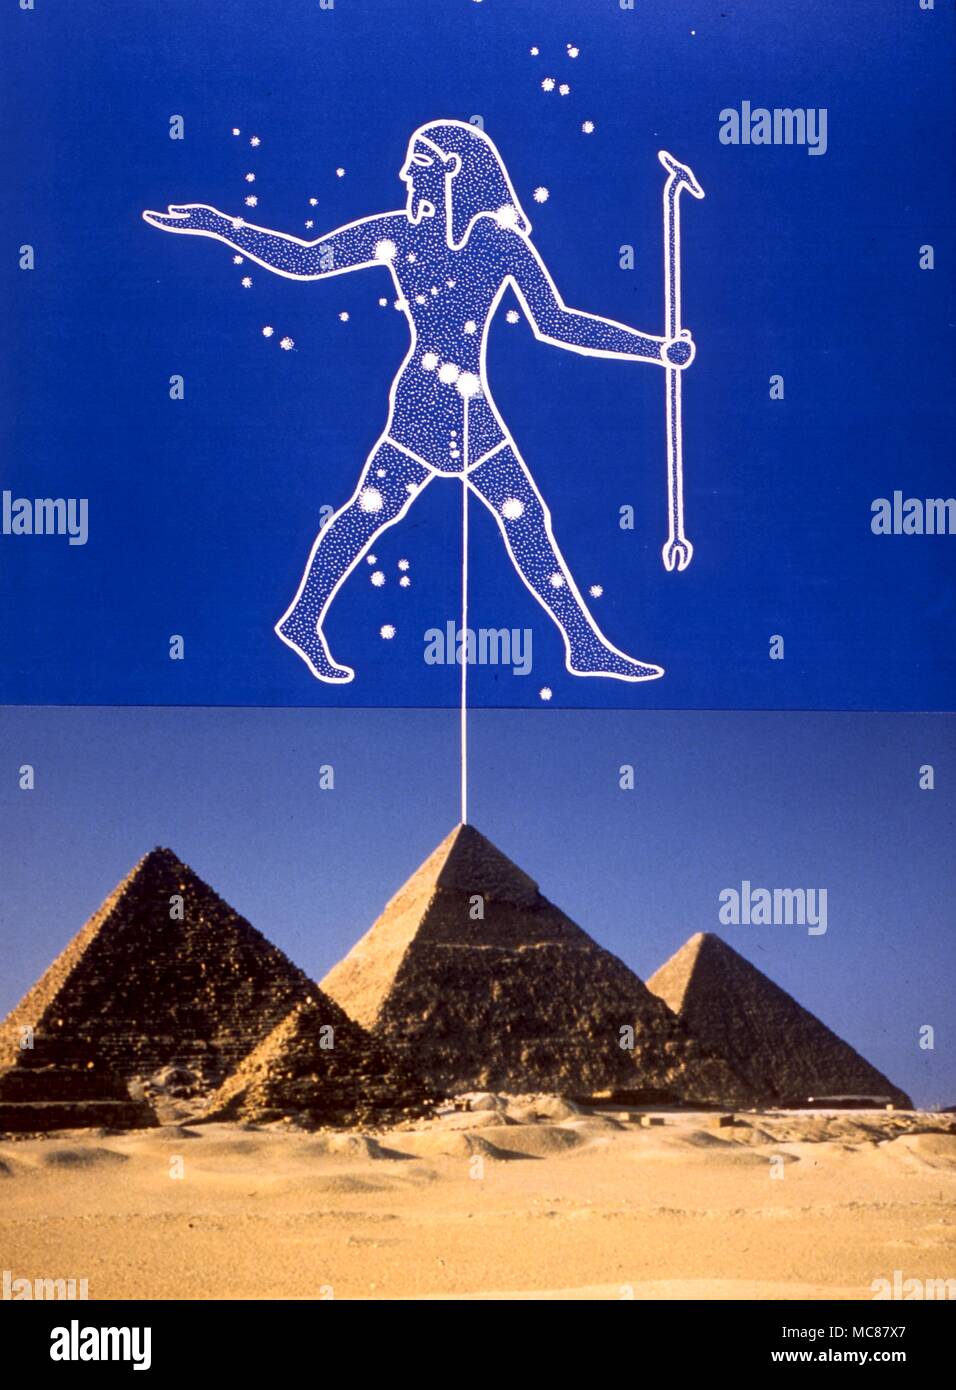 La astrología egipcia. La orientación de las pirámides de Gizah a las tres estrellas del cinturón de Orión Foto de stock